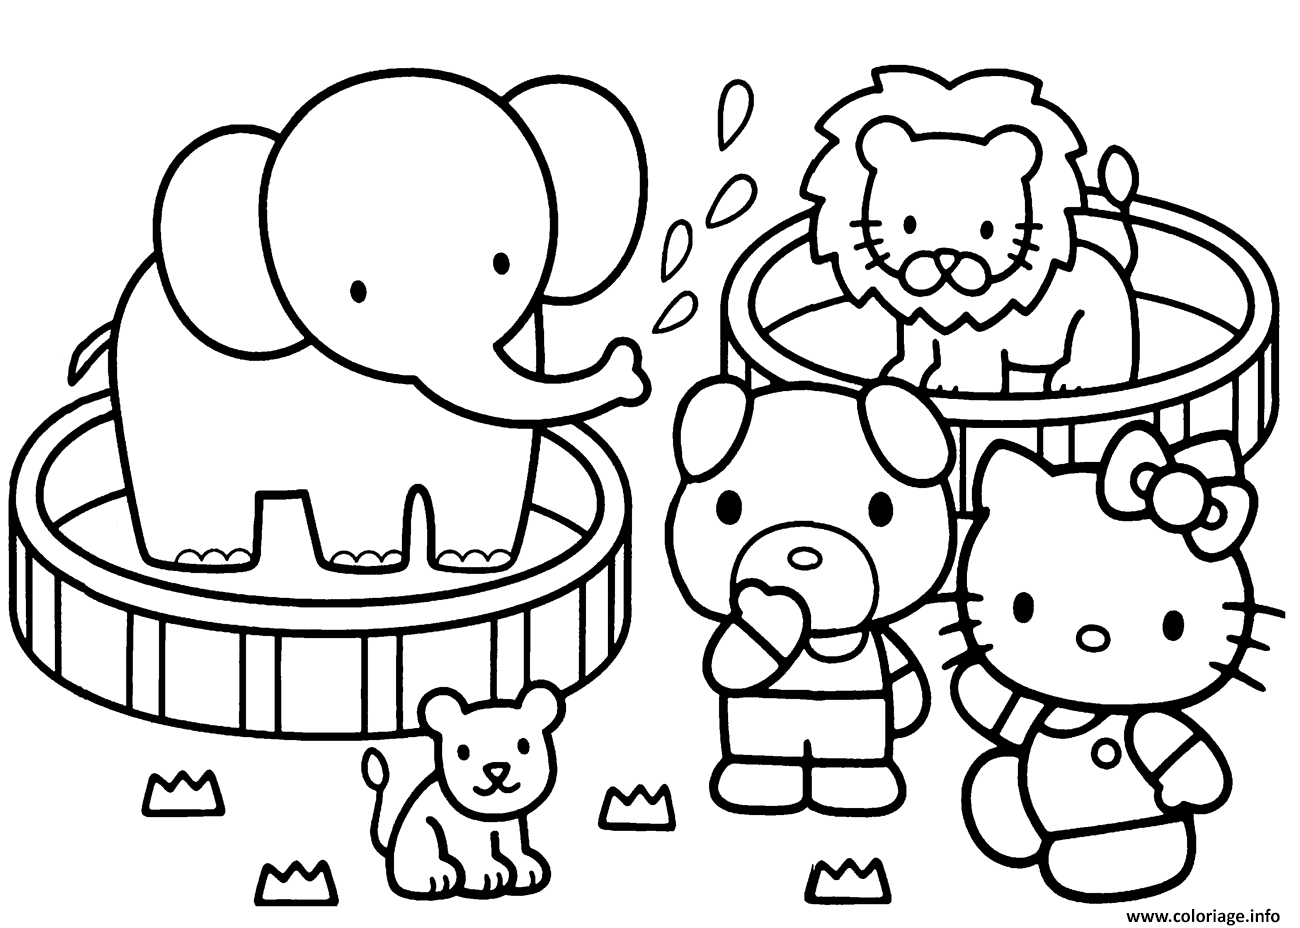 Dessin hello kitty zoo circle avec des animaux Coloriage Gratuit à Imprimer